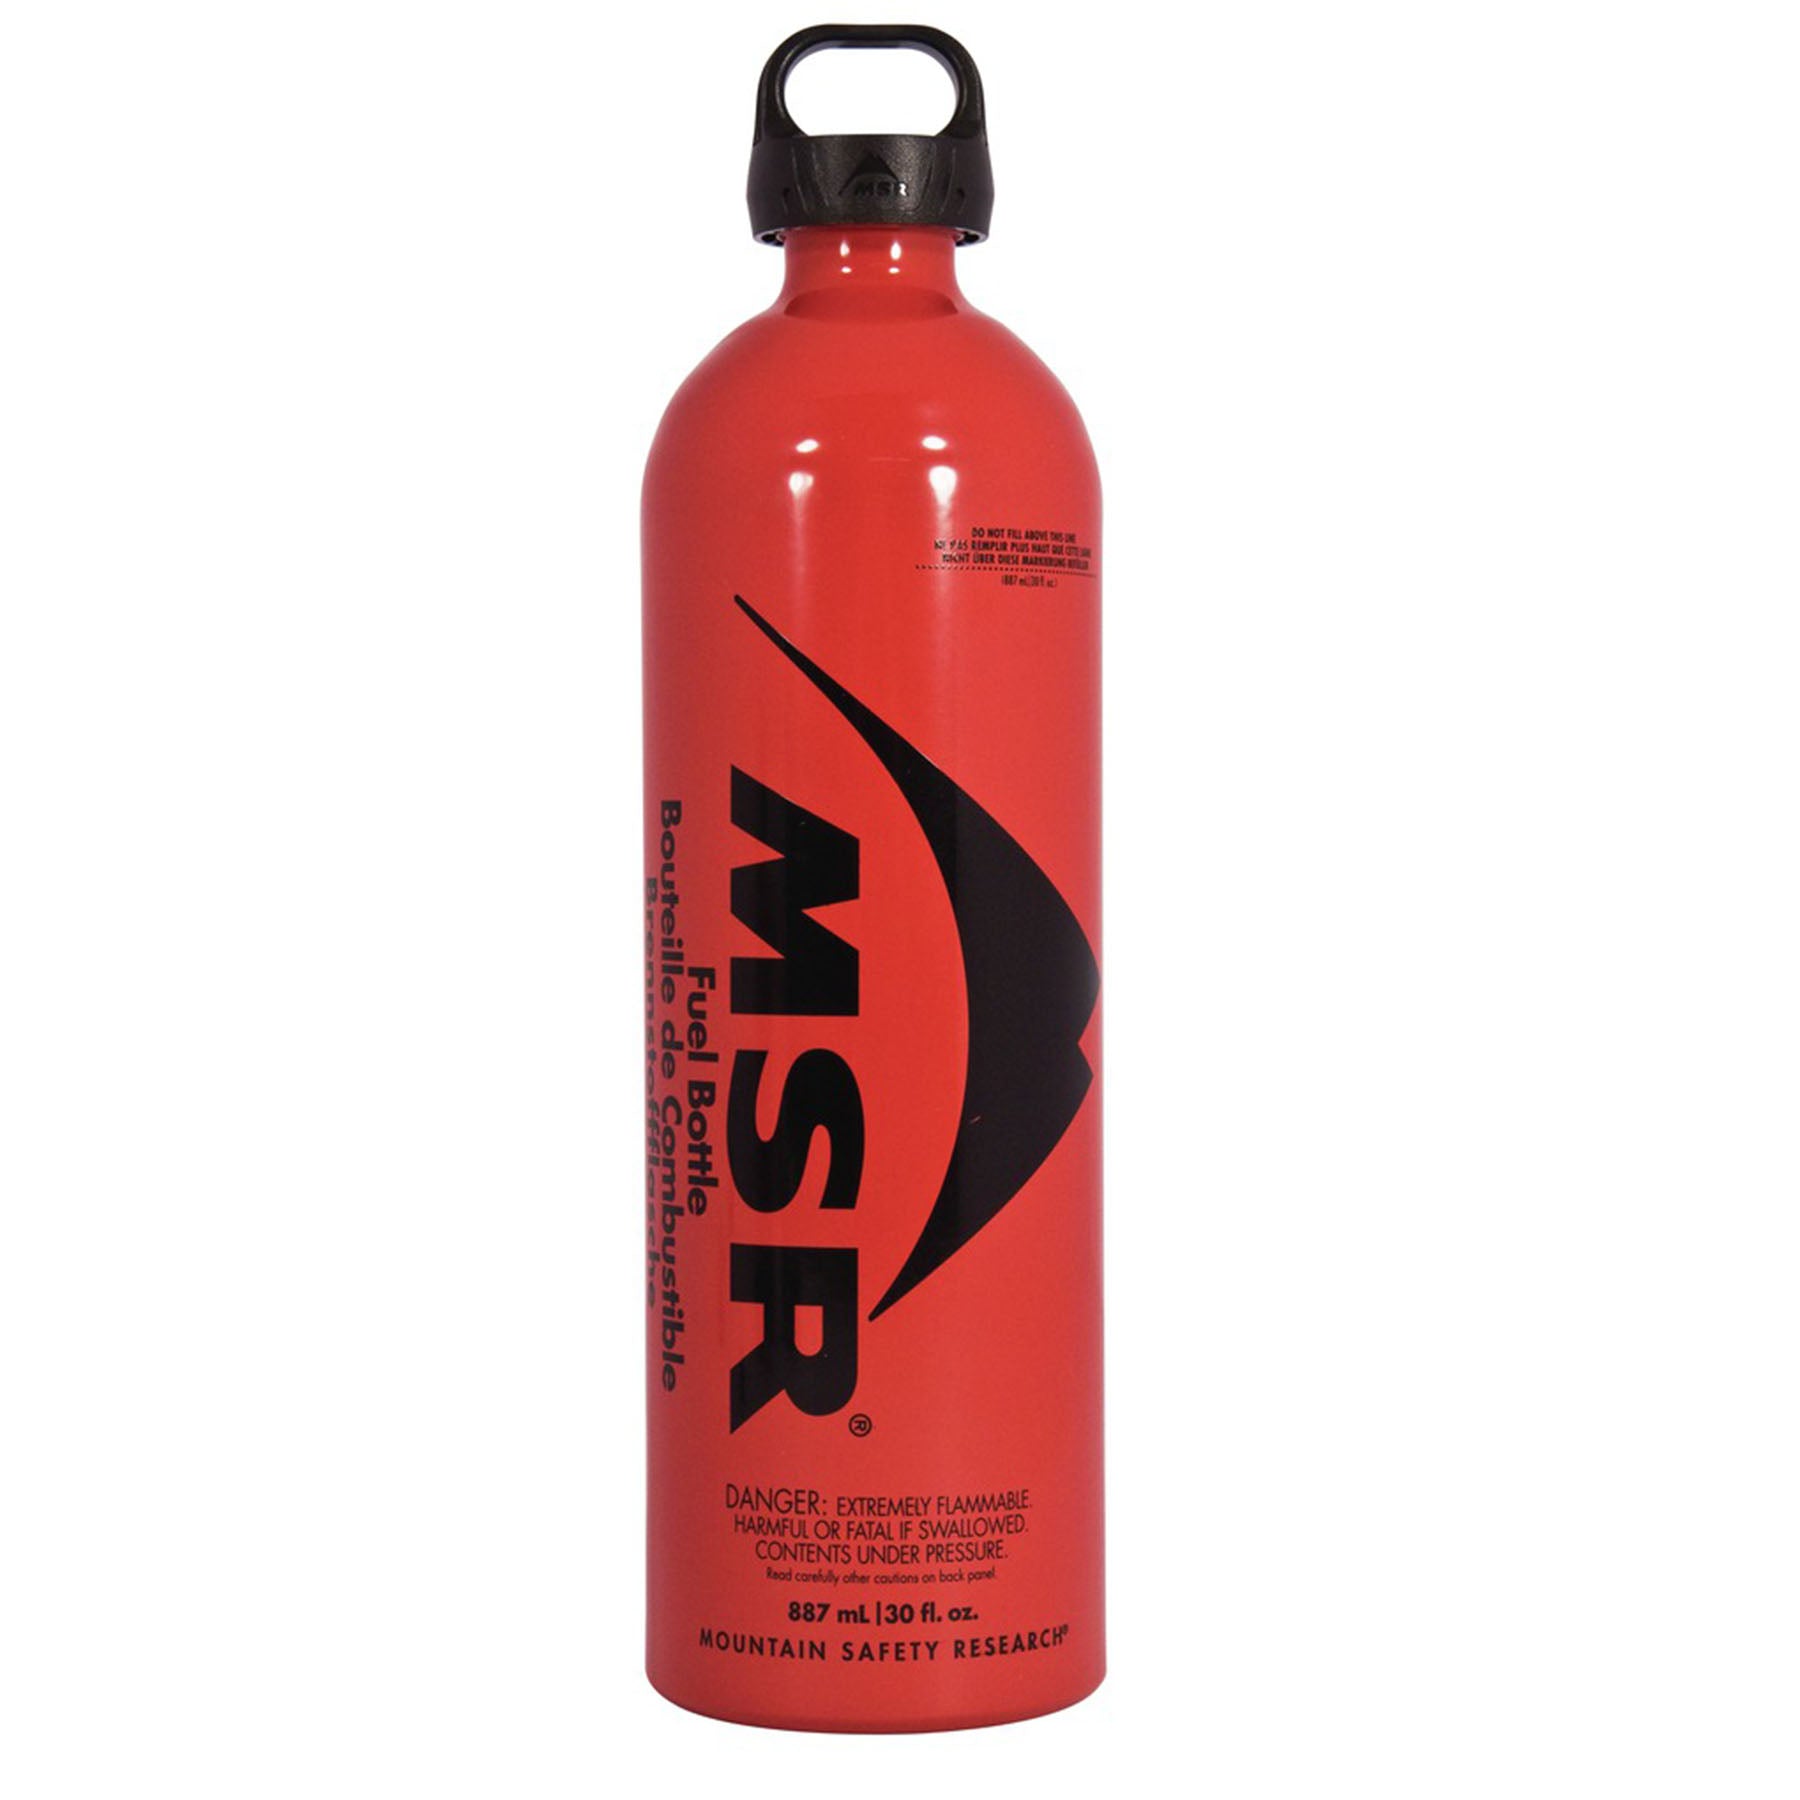 the 30oz msr fuel bottle